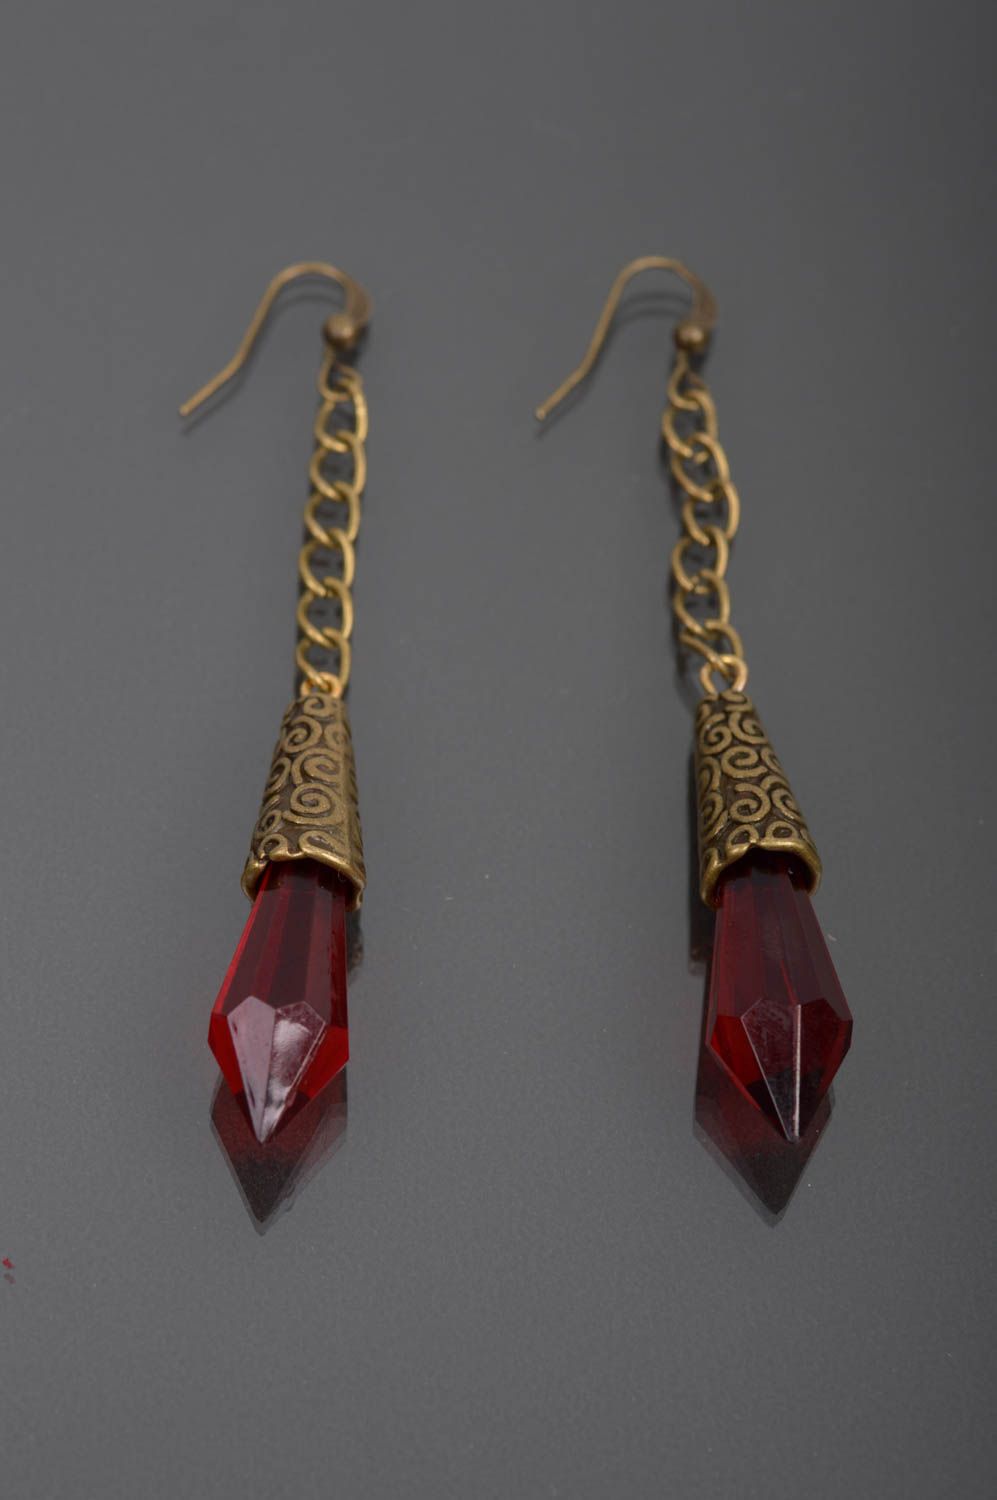 Long beaded earrings stylish handmade earrings female present gift for her photo 4